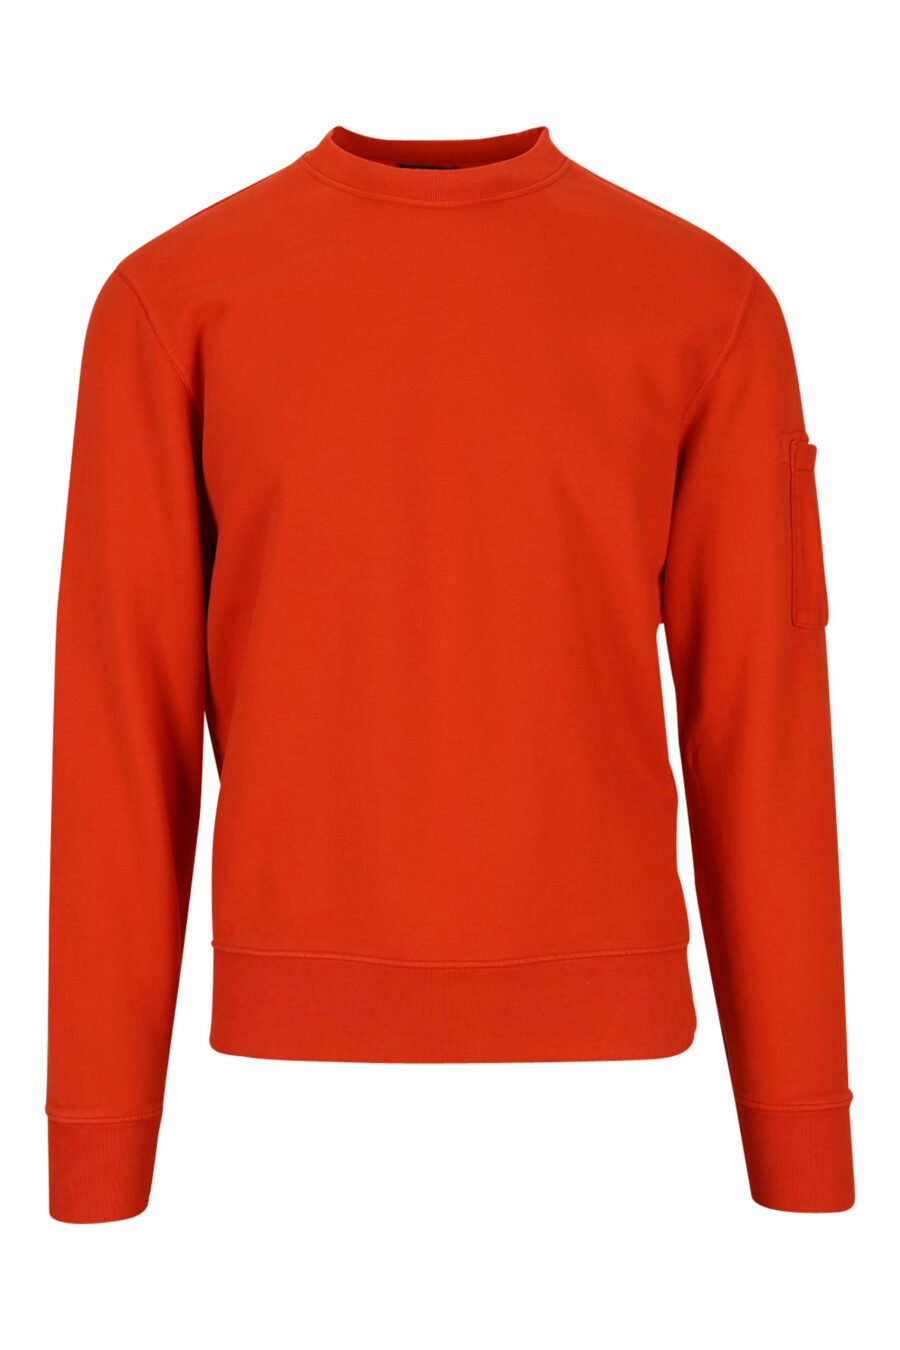 Orange sweatshirt with side lens logo - 7620943598254 scaled